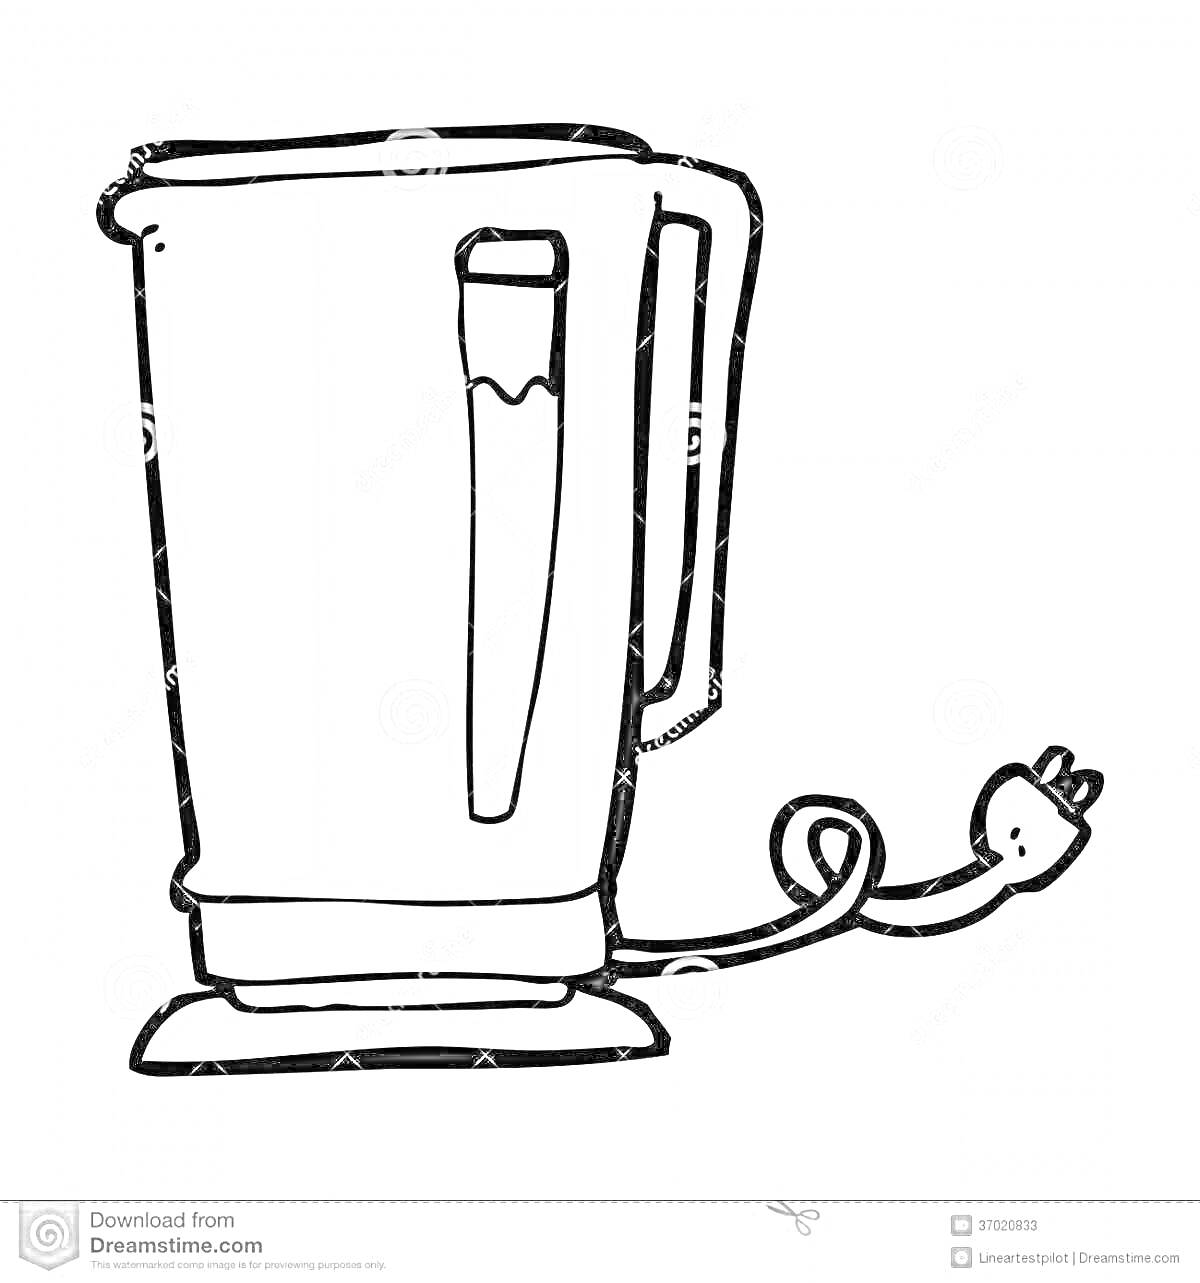 Раскраска Электрический чайник с ручкой и шнуром с вилкой